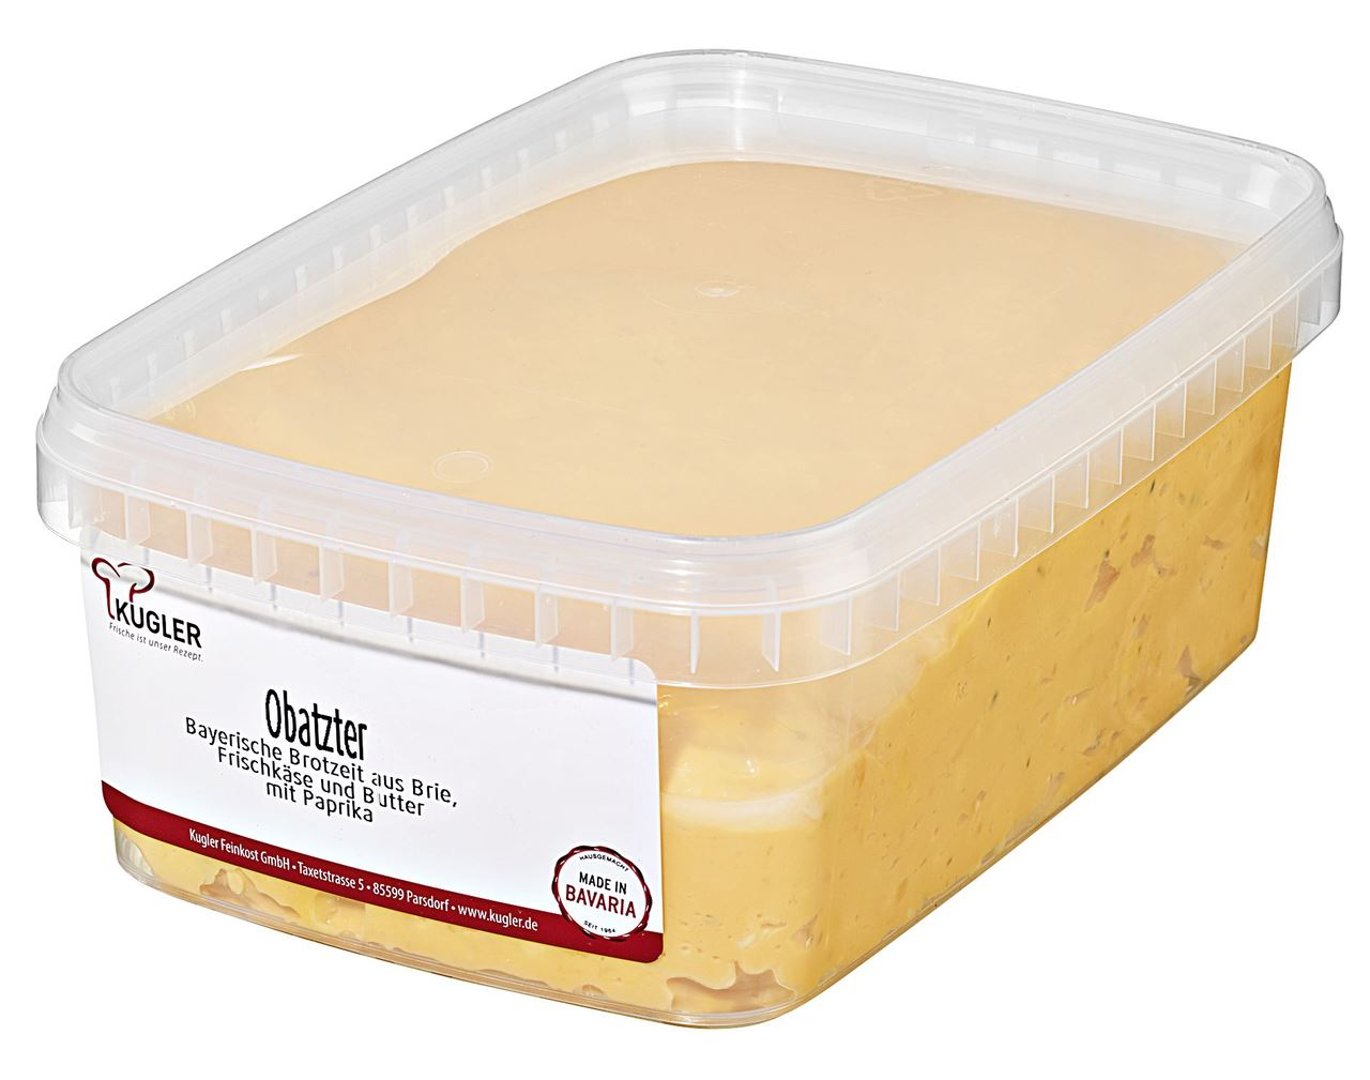 Kugler - Feinkost Obatzter Bayerische Brotzeit aus Brie, Frischkäse und Butter mit Paprika - 1 kg Schale